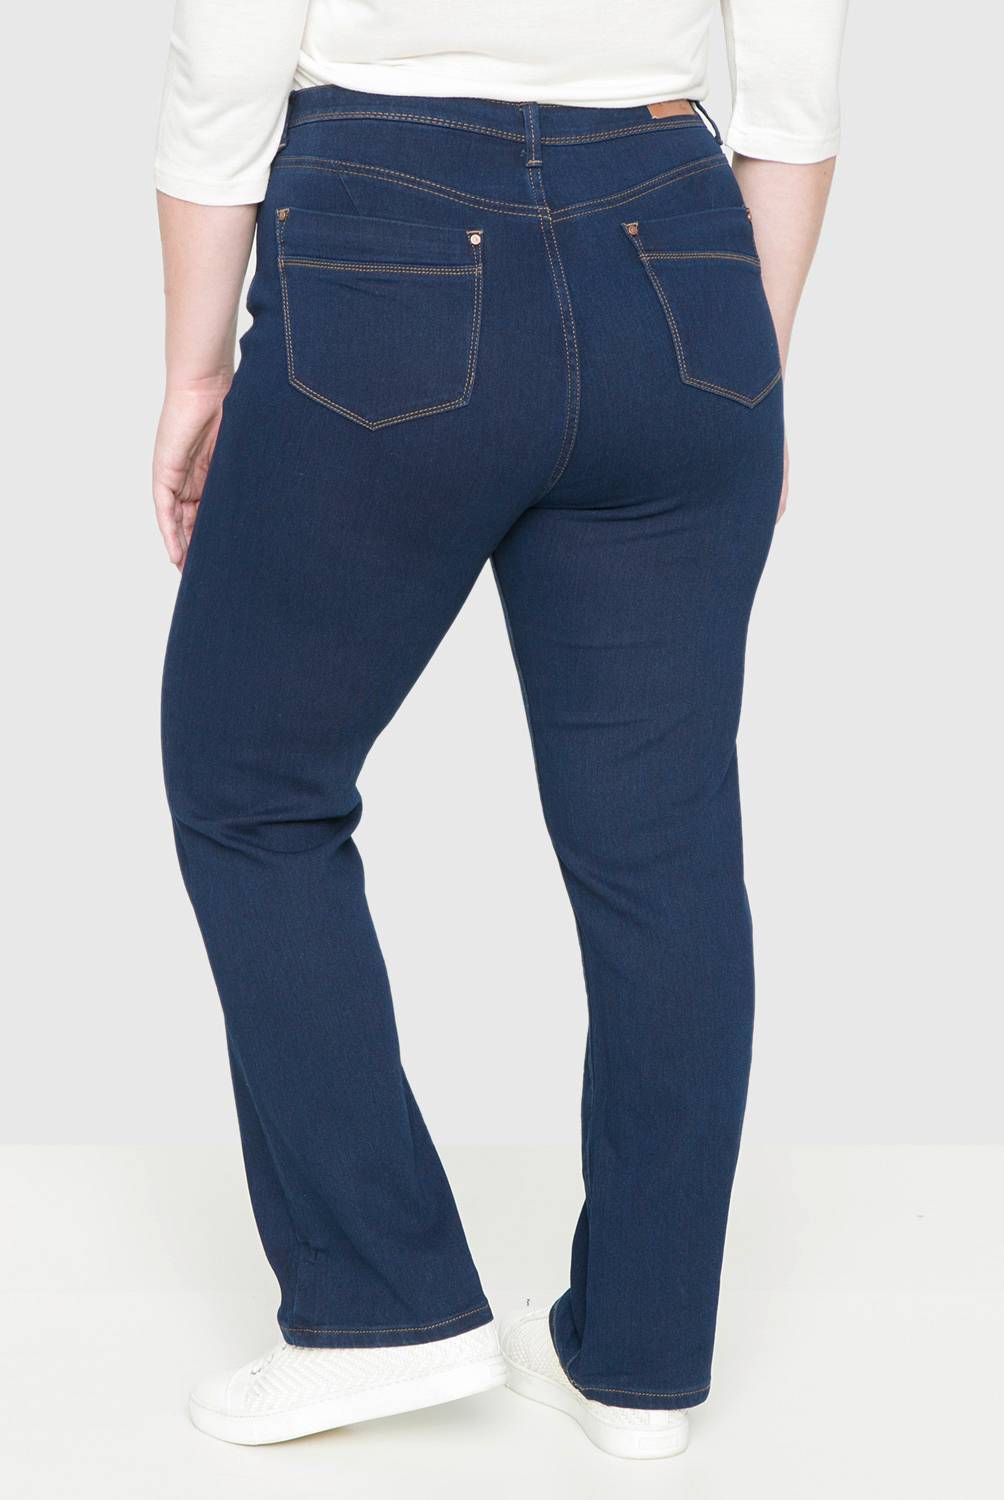 NEWPORT - Jeans Denim Recto Tiro Alto Mujer